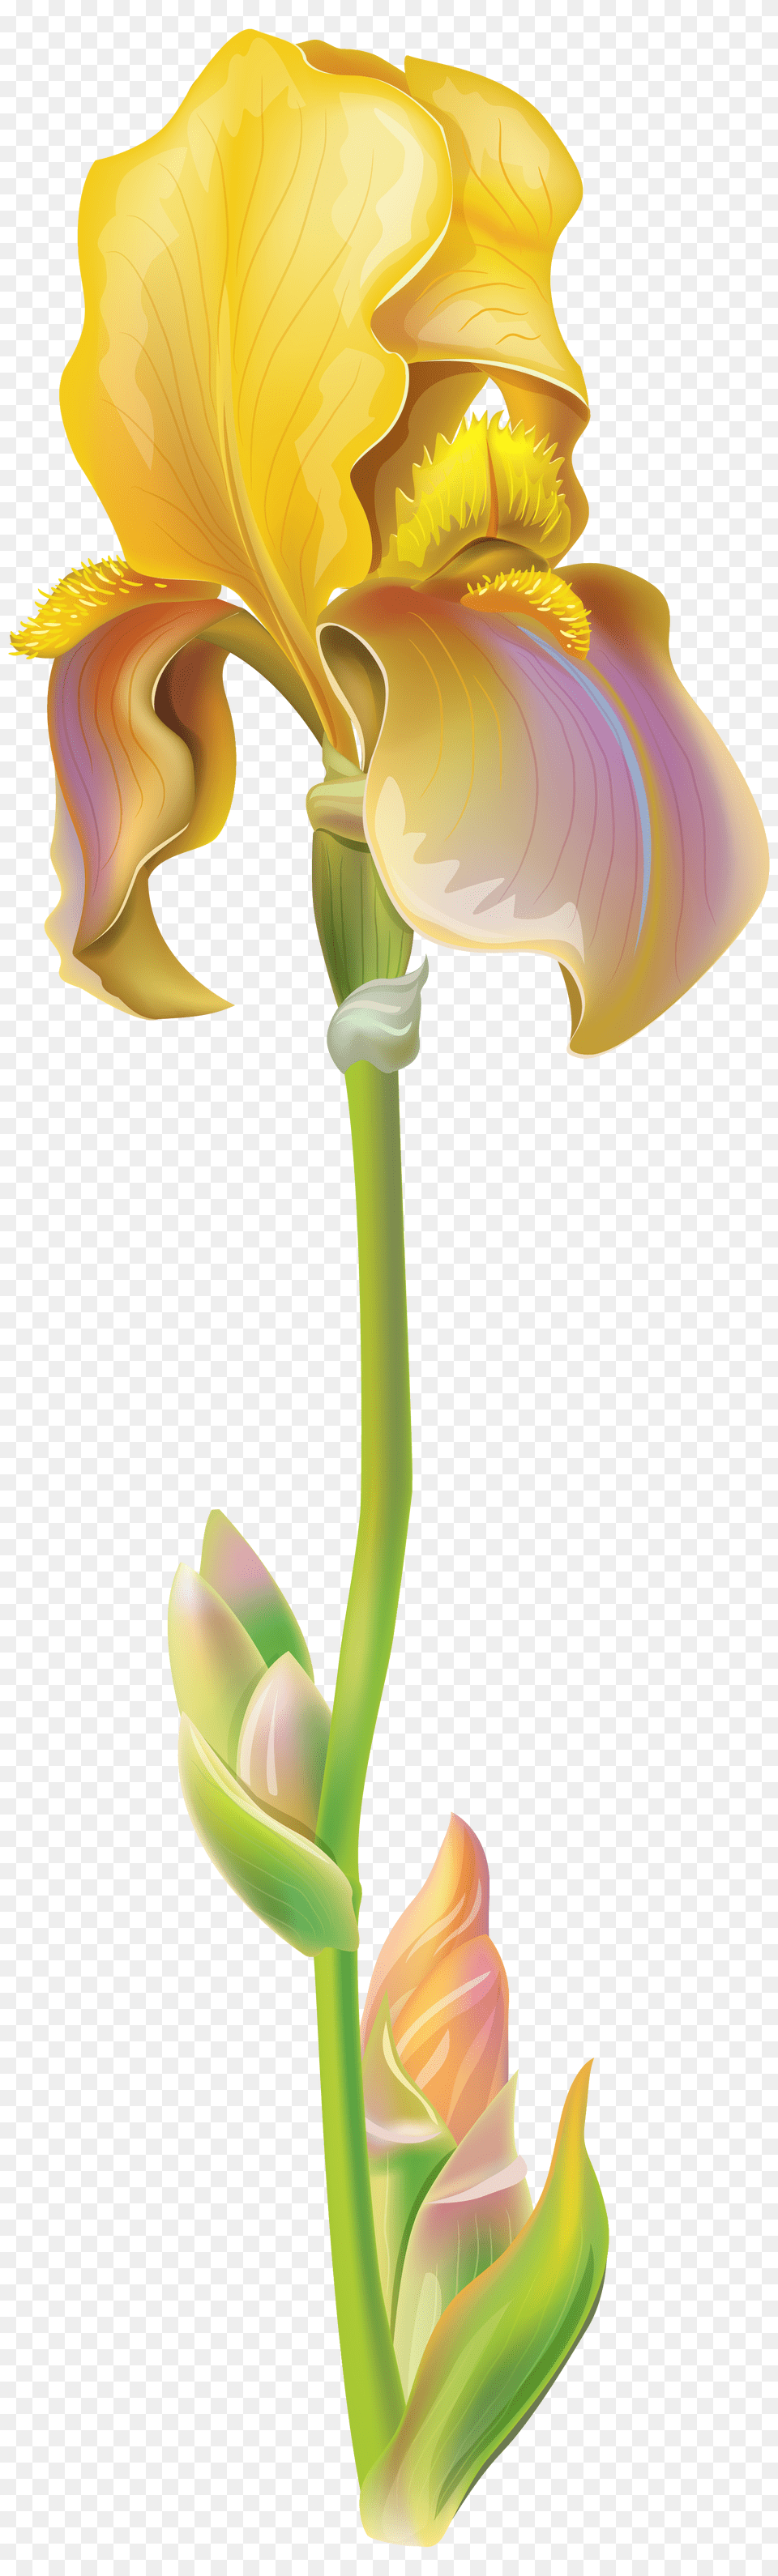 Purple Iris Flower Clipart, Petal, Plant, Baby, Person Png Image